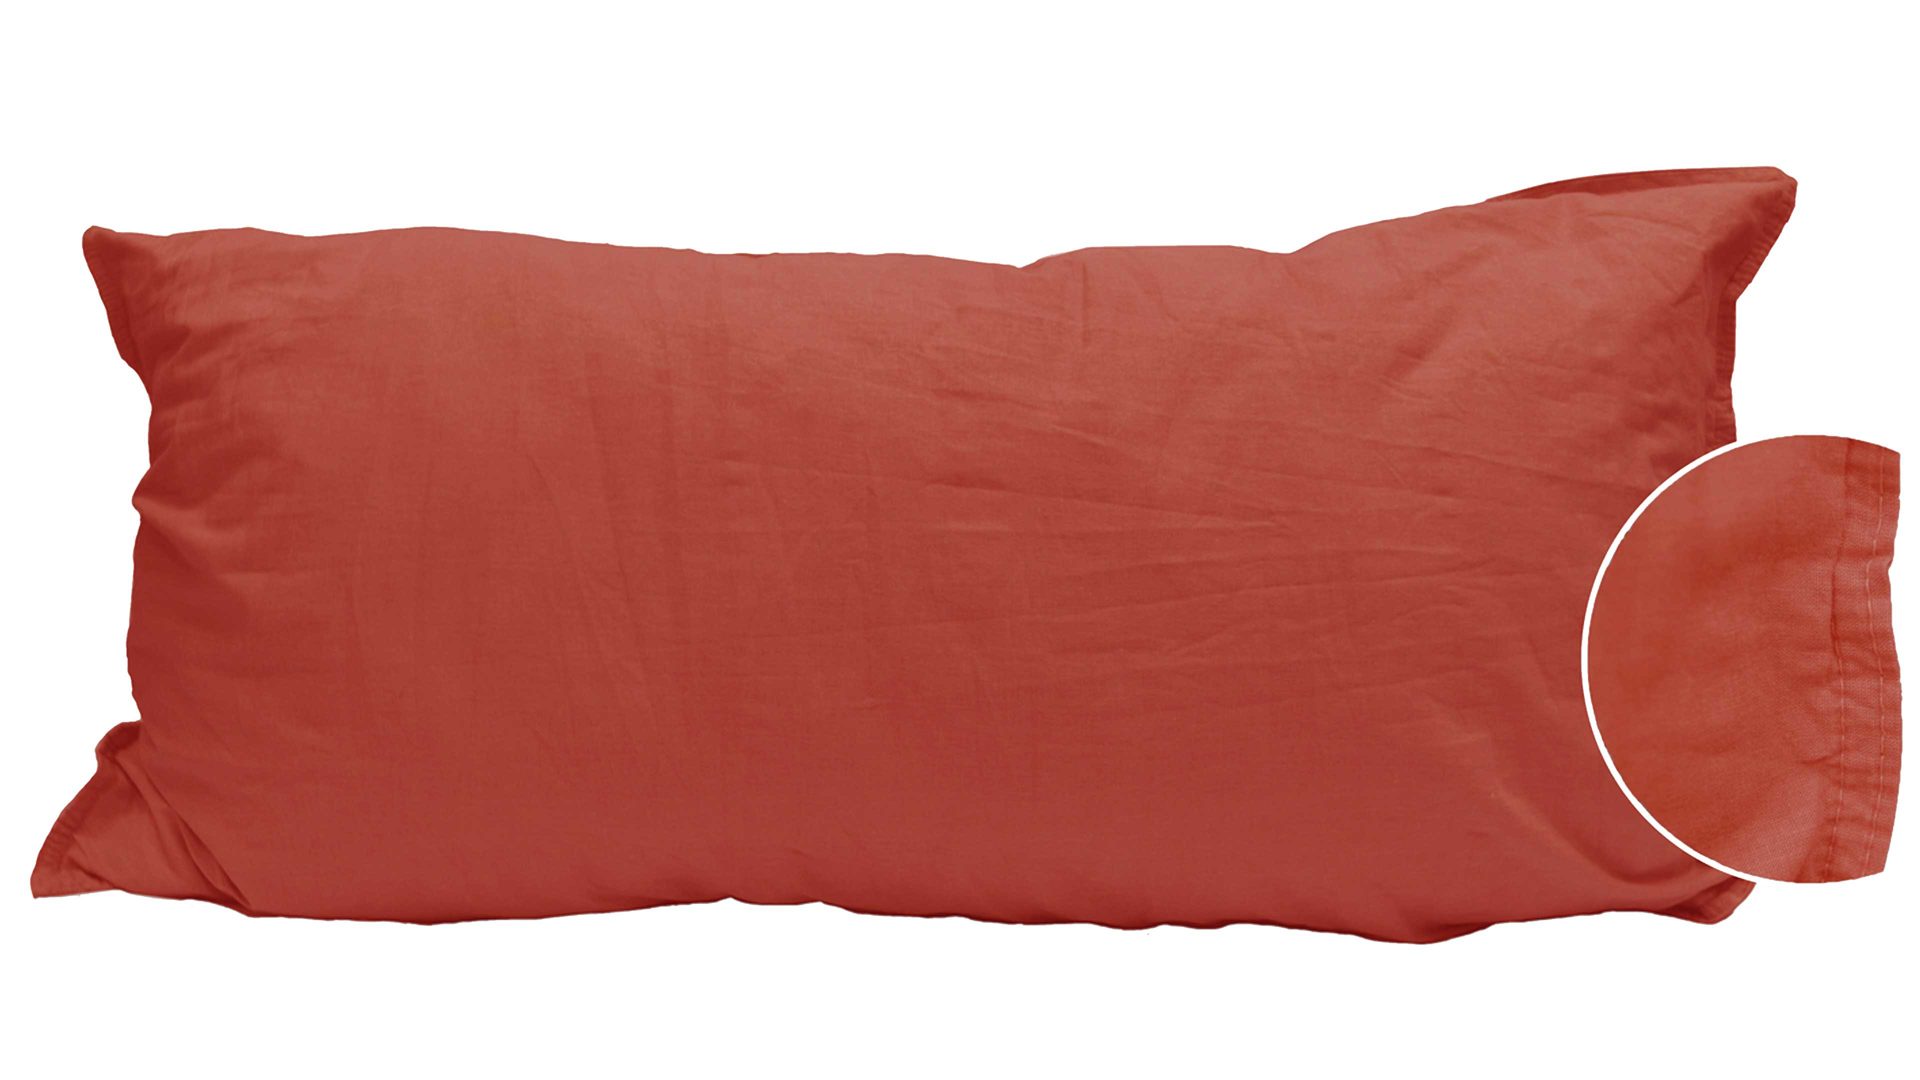 Kissenbezug /-hülle Interliving BEST BUDDYS! aus Stoff in Orange Interliving BEST BUDDYS! Kissenbezug Stone Washed sienafarbene Baumwolle – ca. 40 x 80 cm